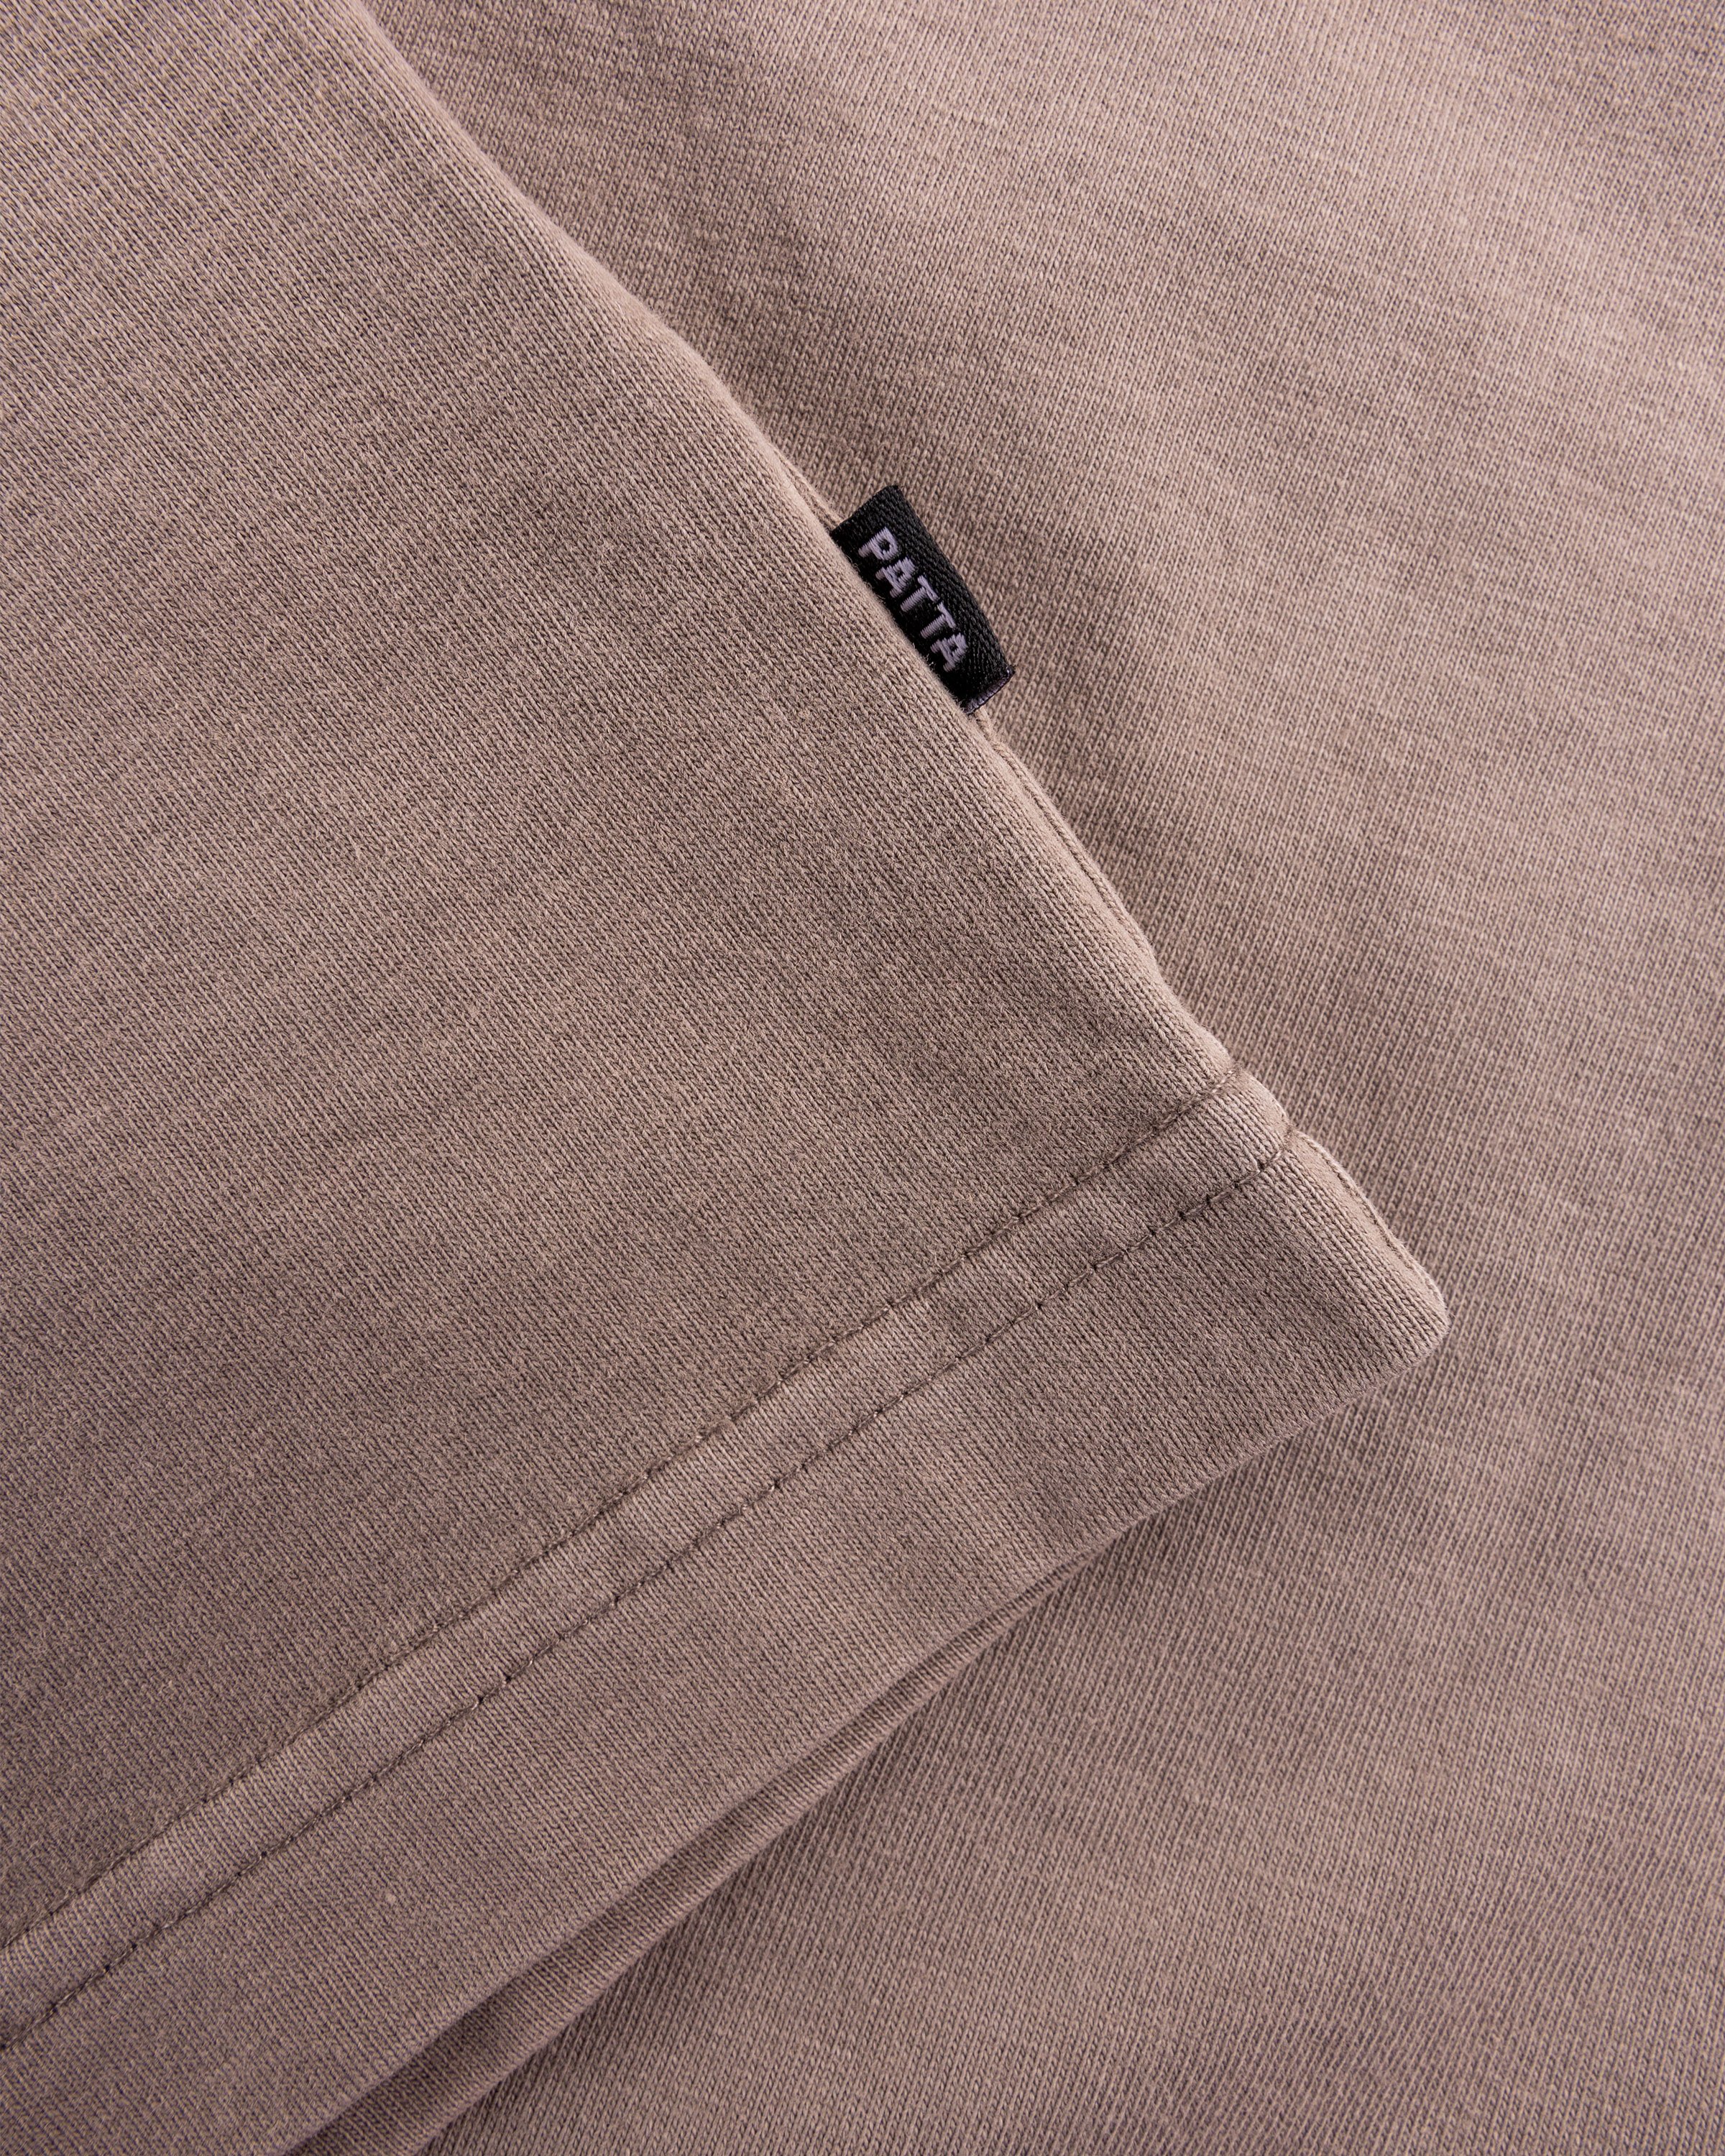 Patta - Basic Pocket T-Shirt Driftwood - Clothing - Grey - Image 7